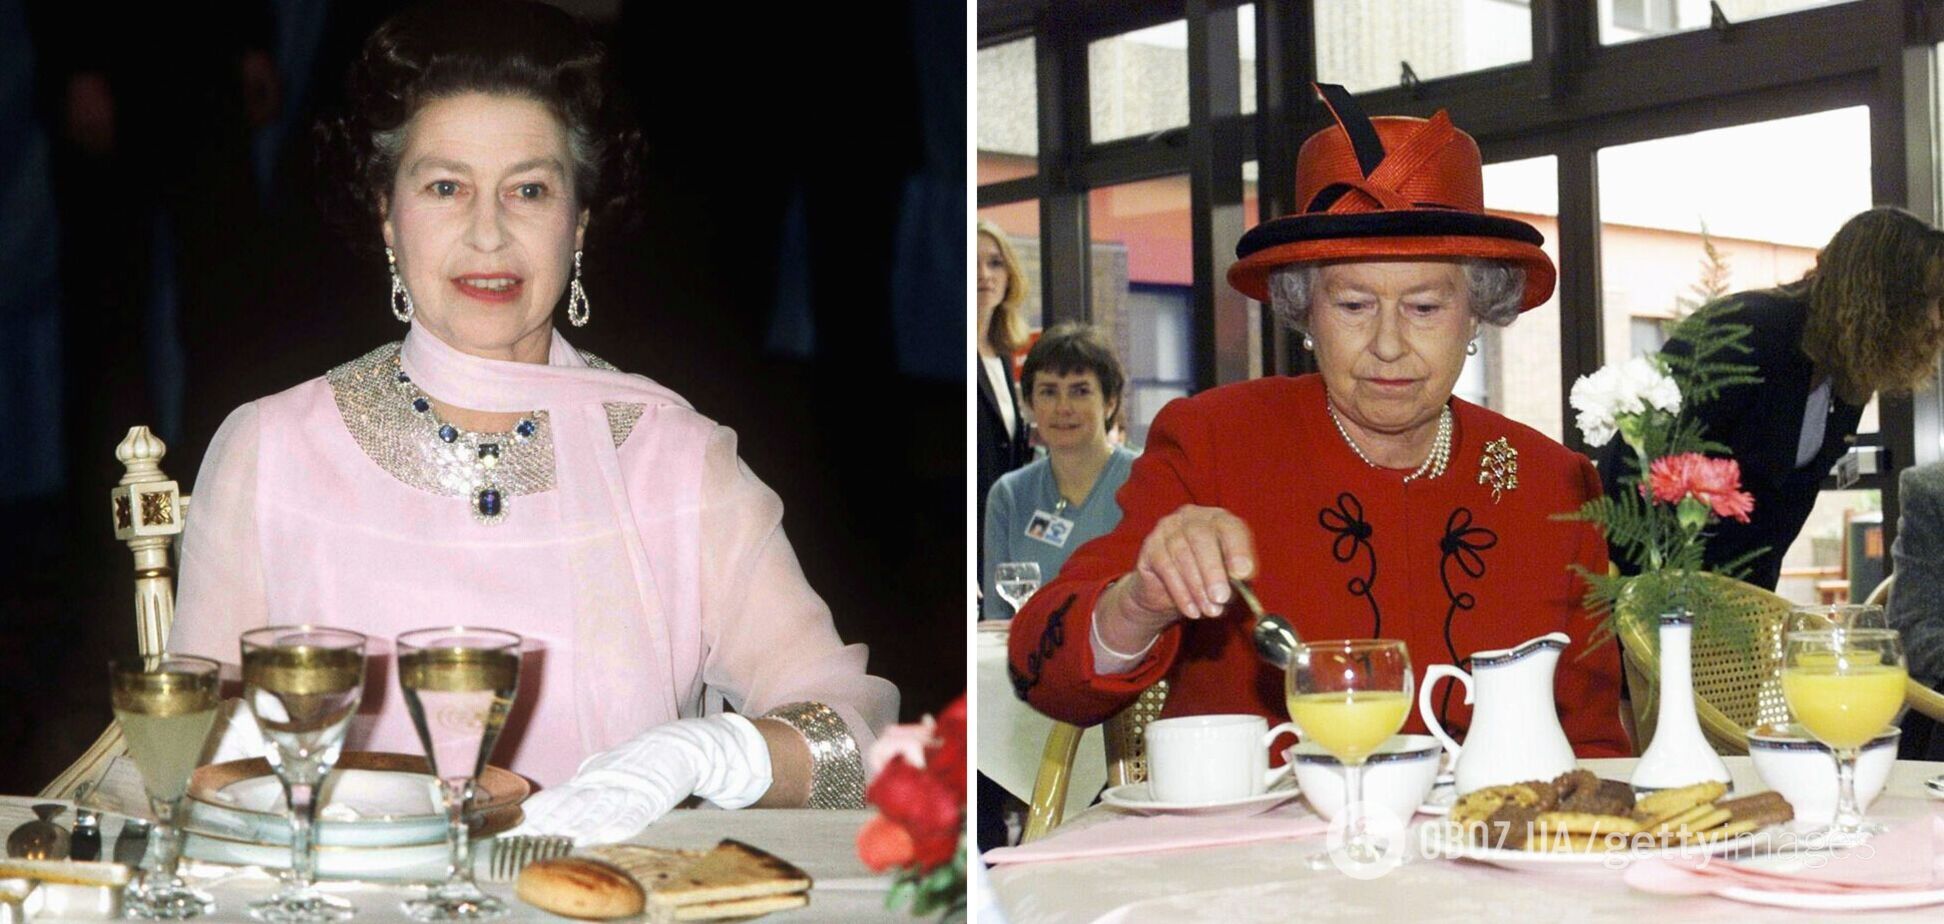 Завтрак по-королевски. Стало известно, что Елизавета II ест каждый день на протяжении 70 лет